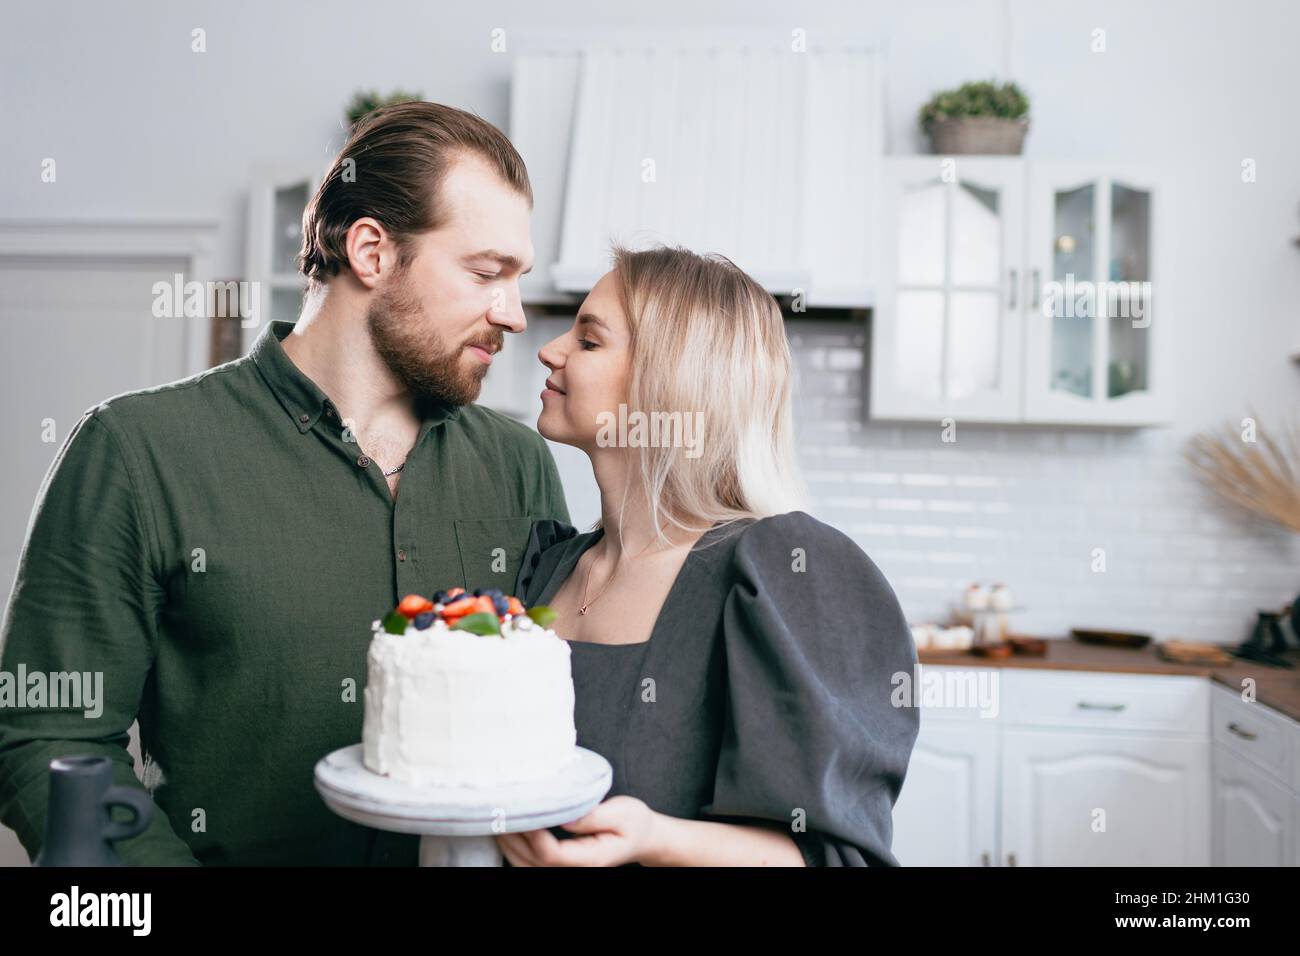 Pâtisserie chef confiserie jeune femme caucasienne avec mari amour petit ami homme essayez le goût du gâteau sur la cuisine maison table. Gâteaux petits gâteaux et dessert sucré Banque D'Images